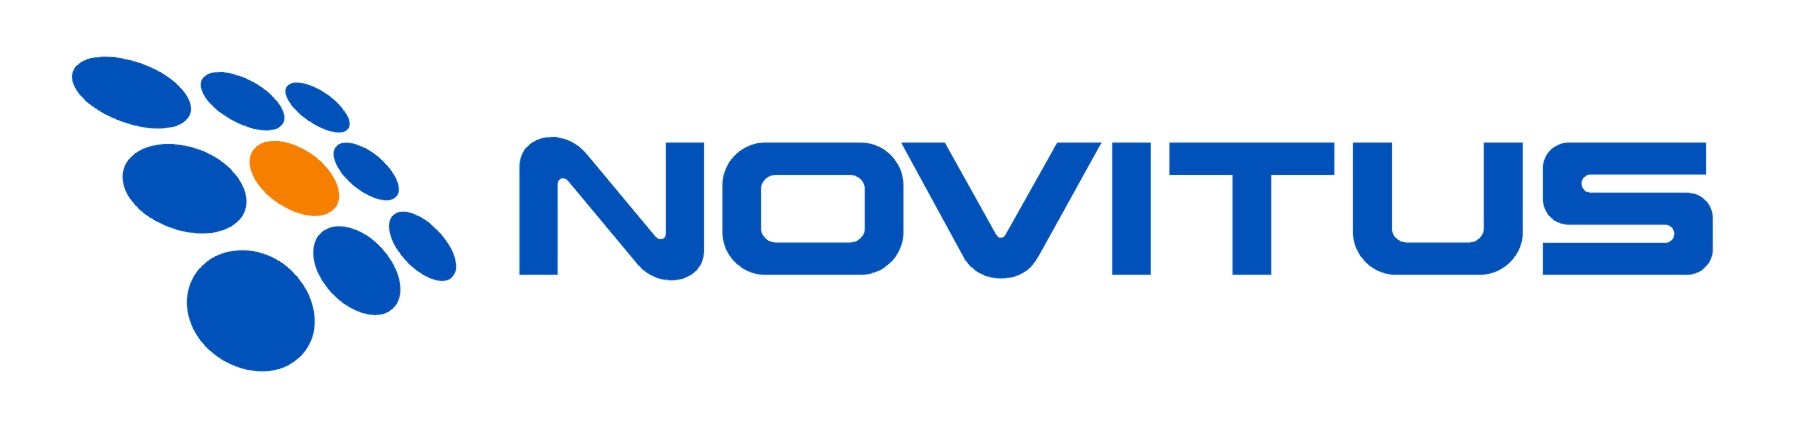 Logo firmy Novitus